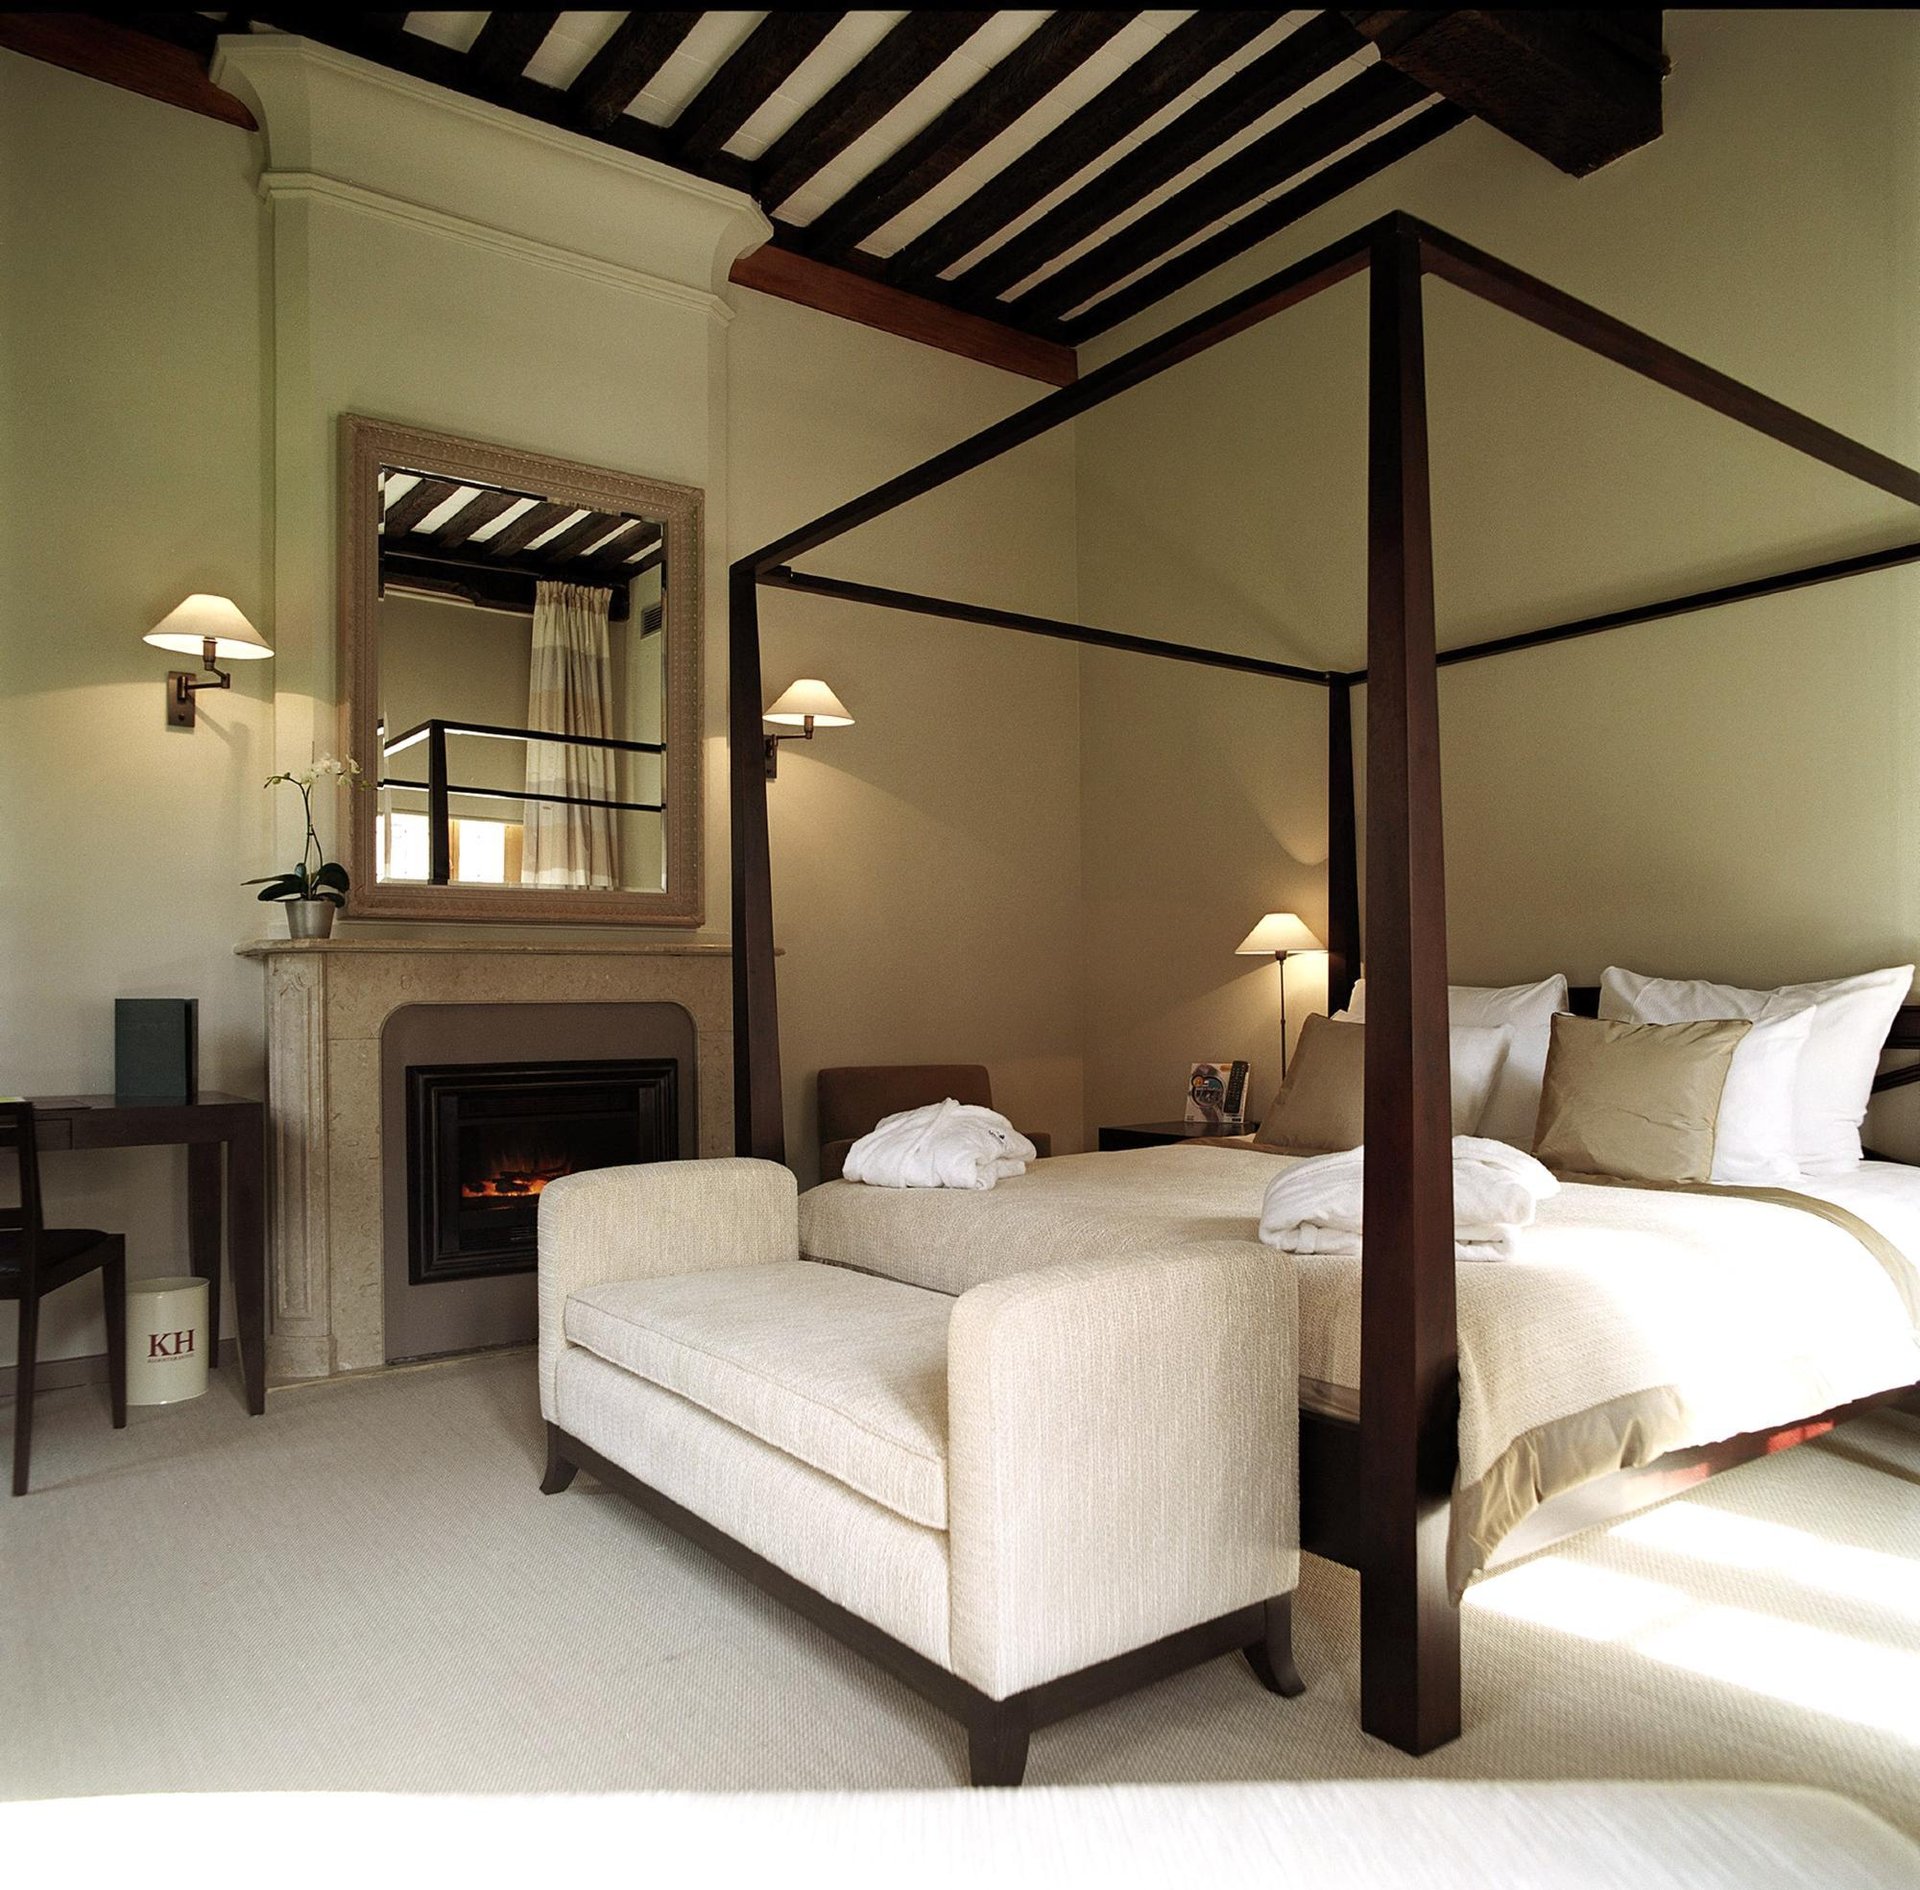 Chambre Charming, chambre confort, hôtel historique, chambre avec salon, chambre avec bureau, chambre contemporaine